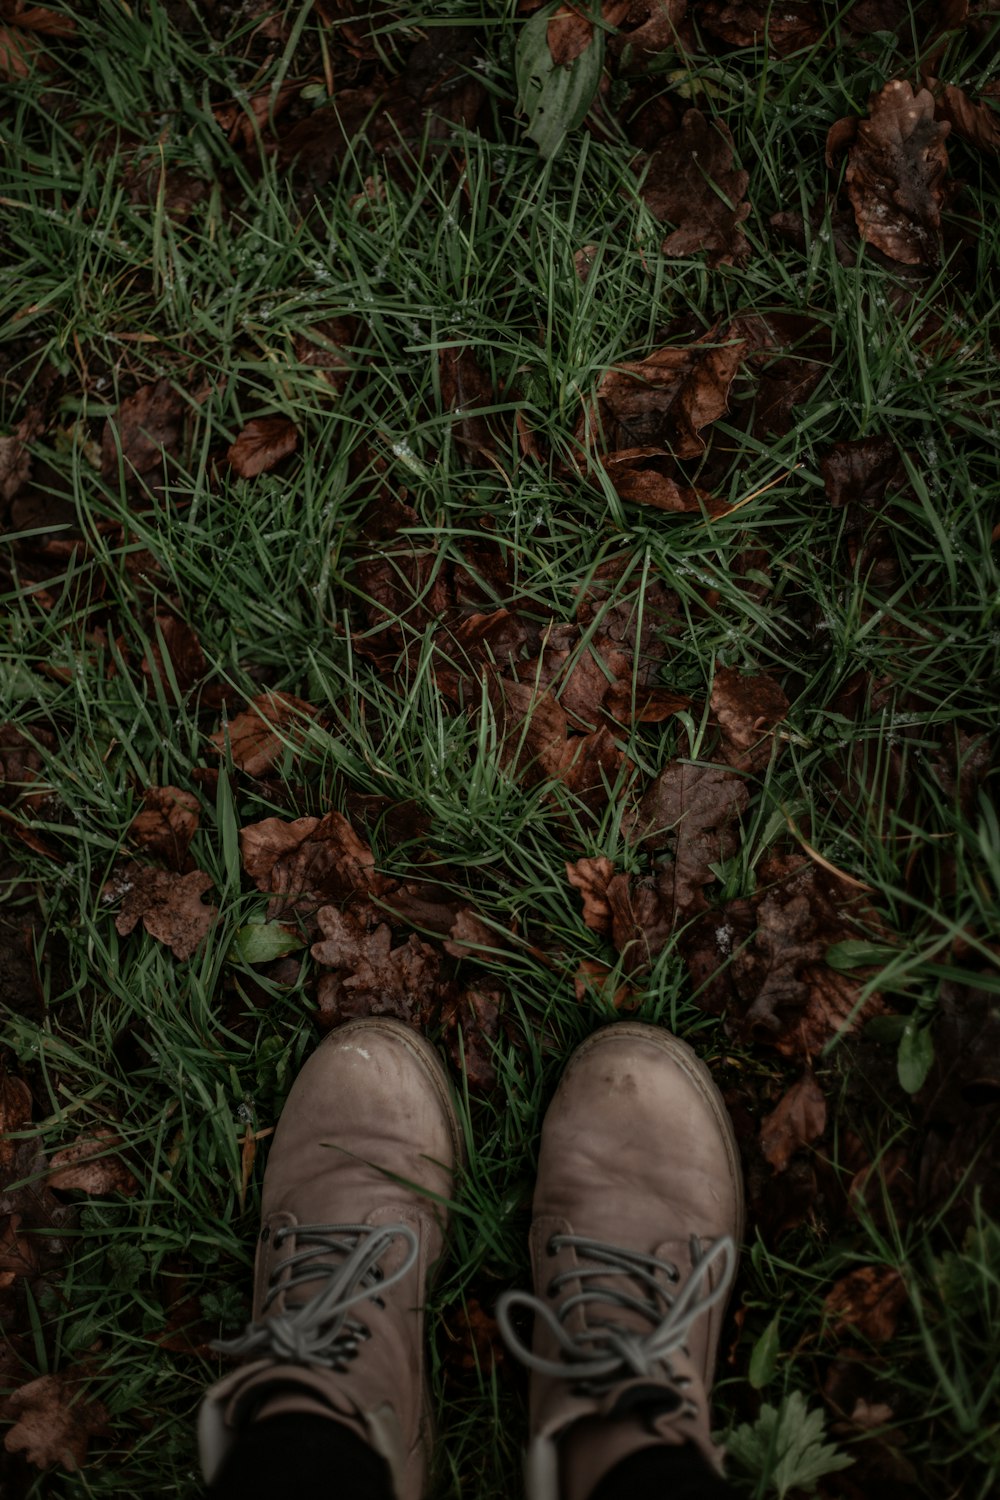 pessoa vestindo sapatos de couro marrom em pé sobre folhas secas marrons